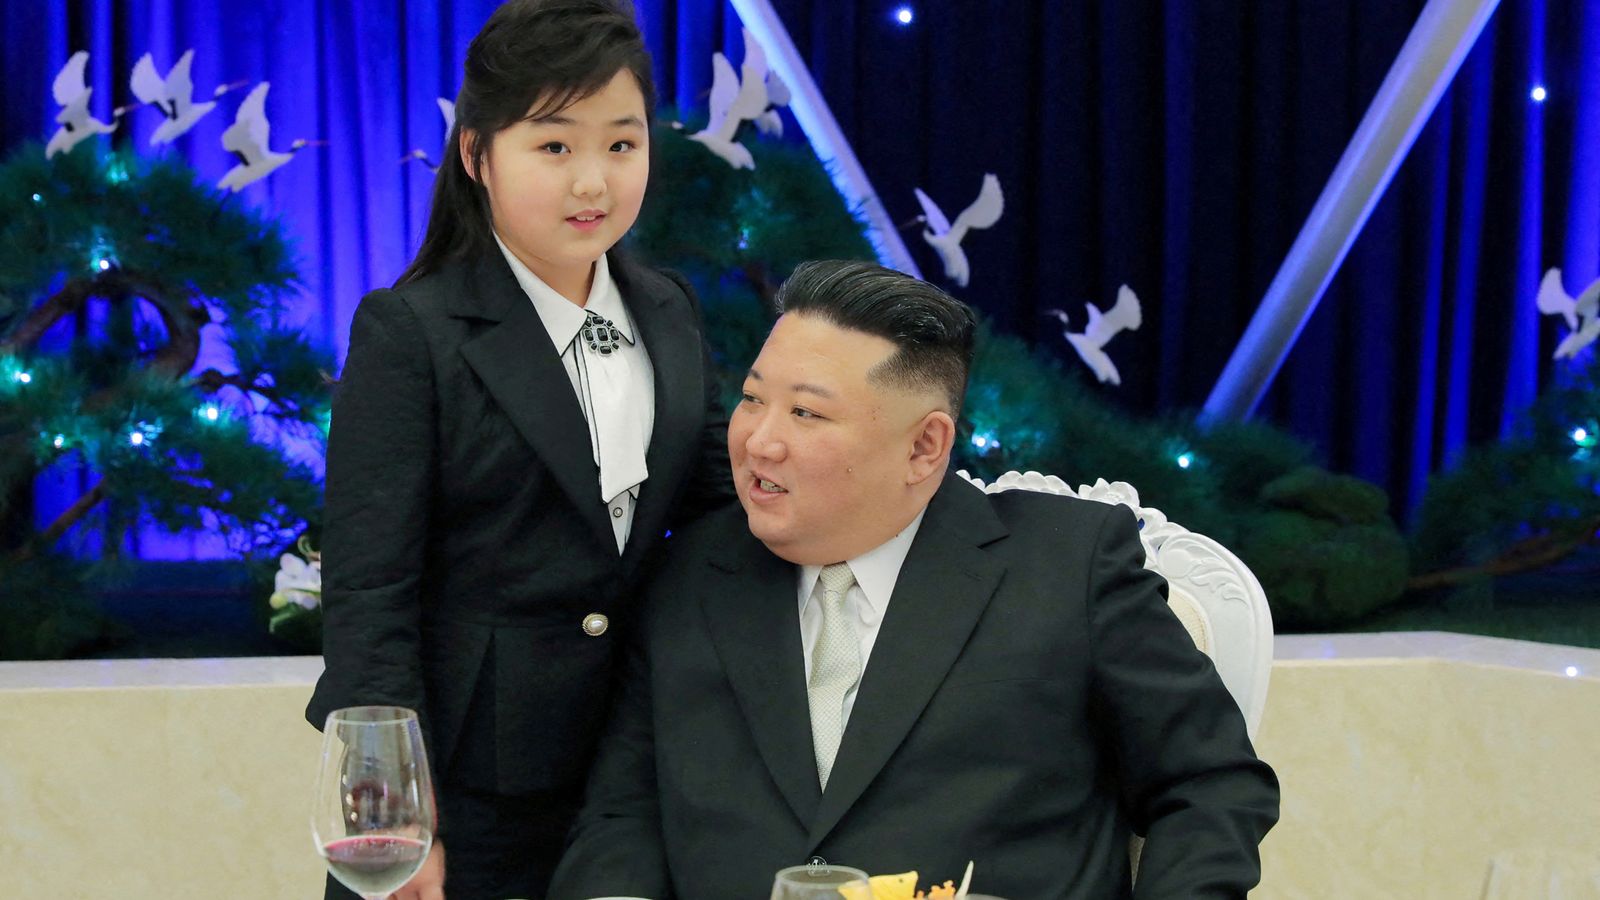 Kim Jong Un se pojavljuje sa kćerkom u javnosti kako bi je predstavio kao nasljednicu dok porodicu želi prikazati kao britansku monarhiju